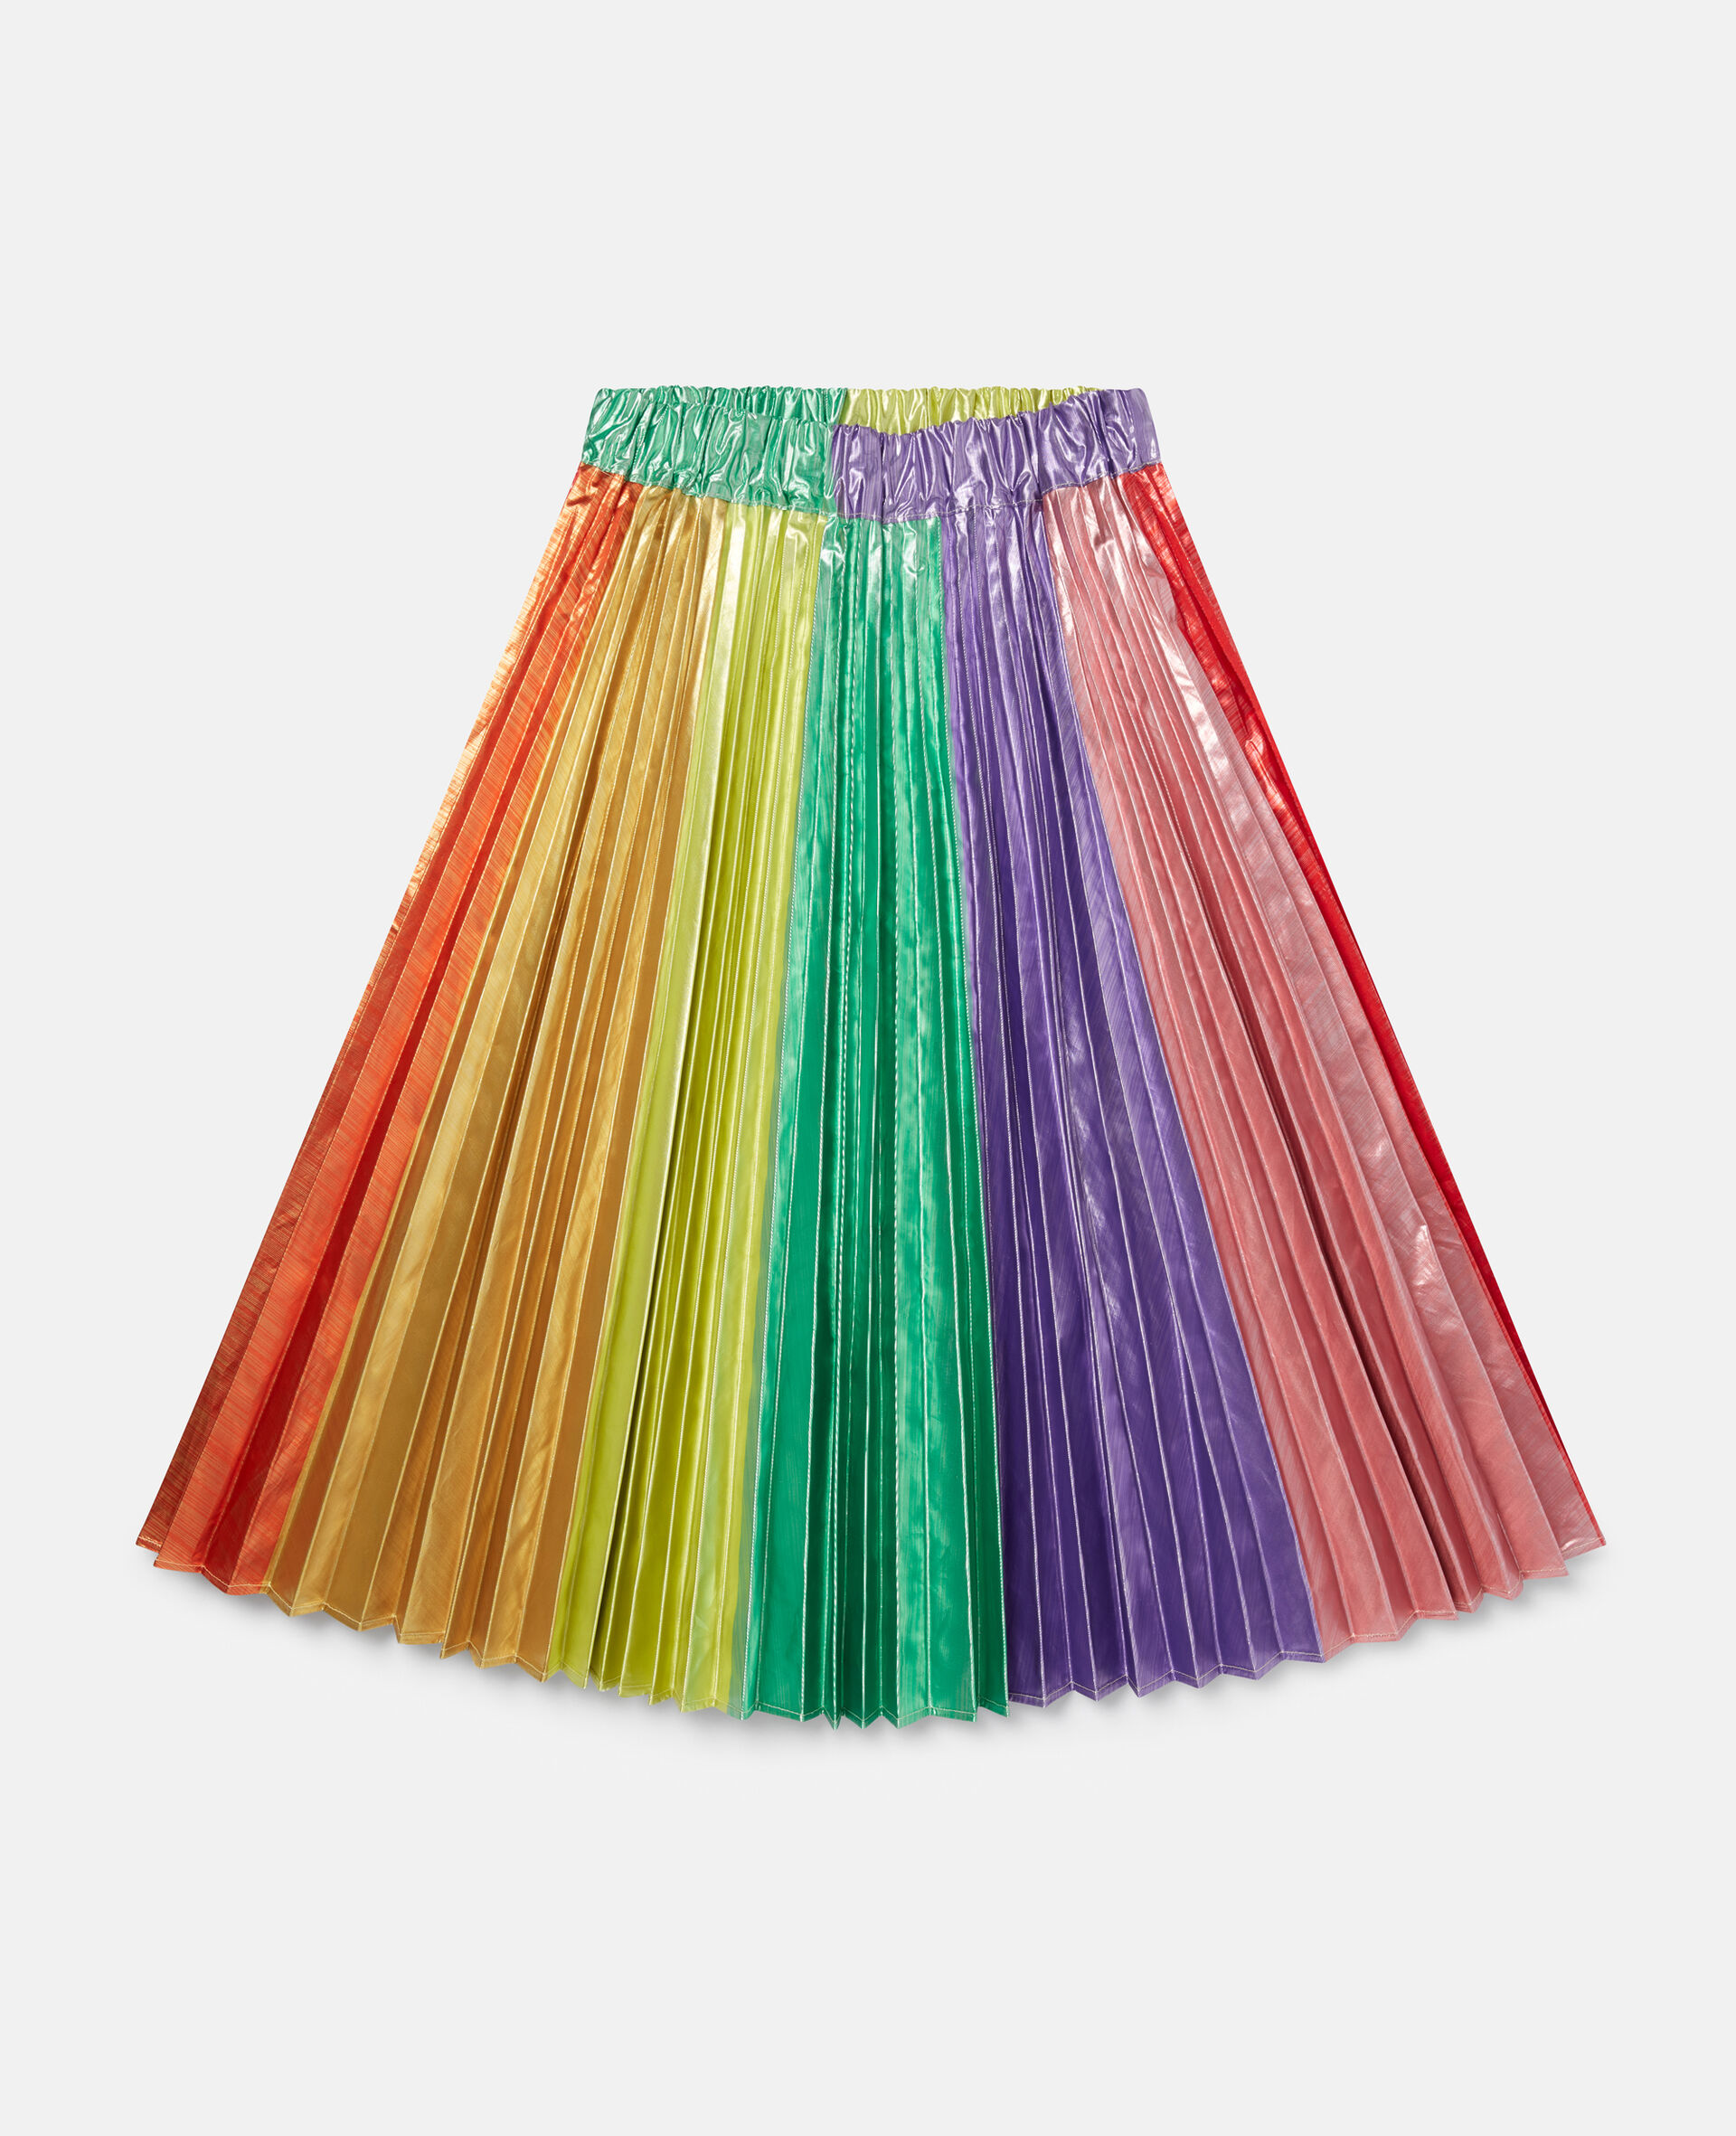 Rainbow Striped Pleated Taffeta Skirt-Multicoloured-large